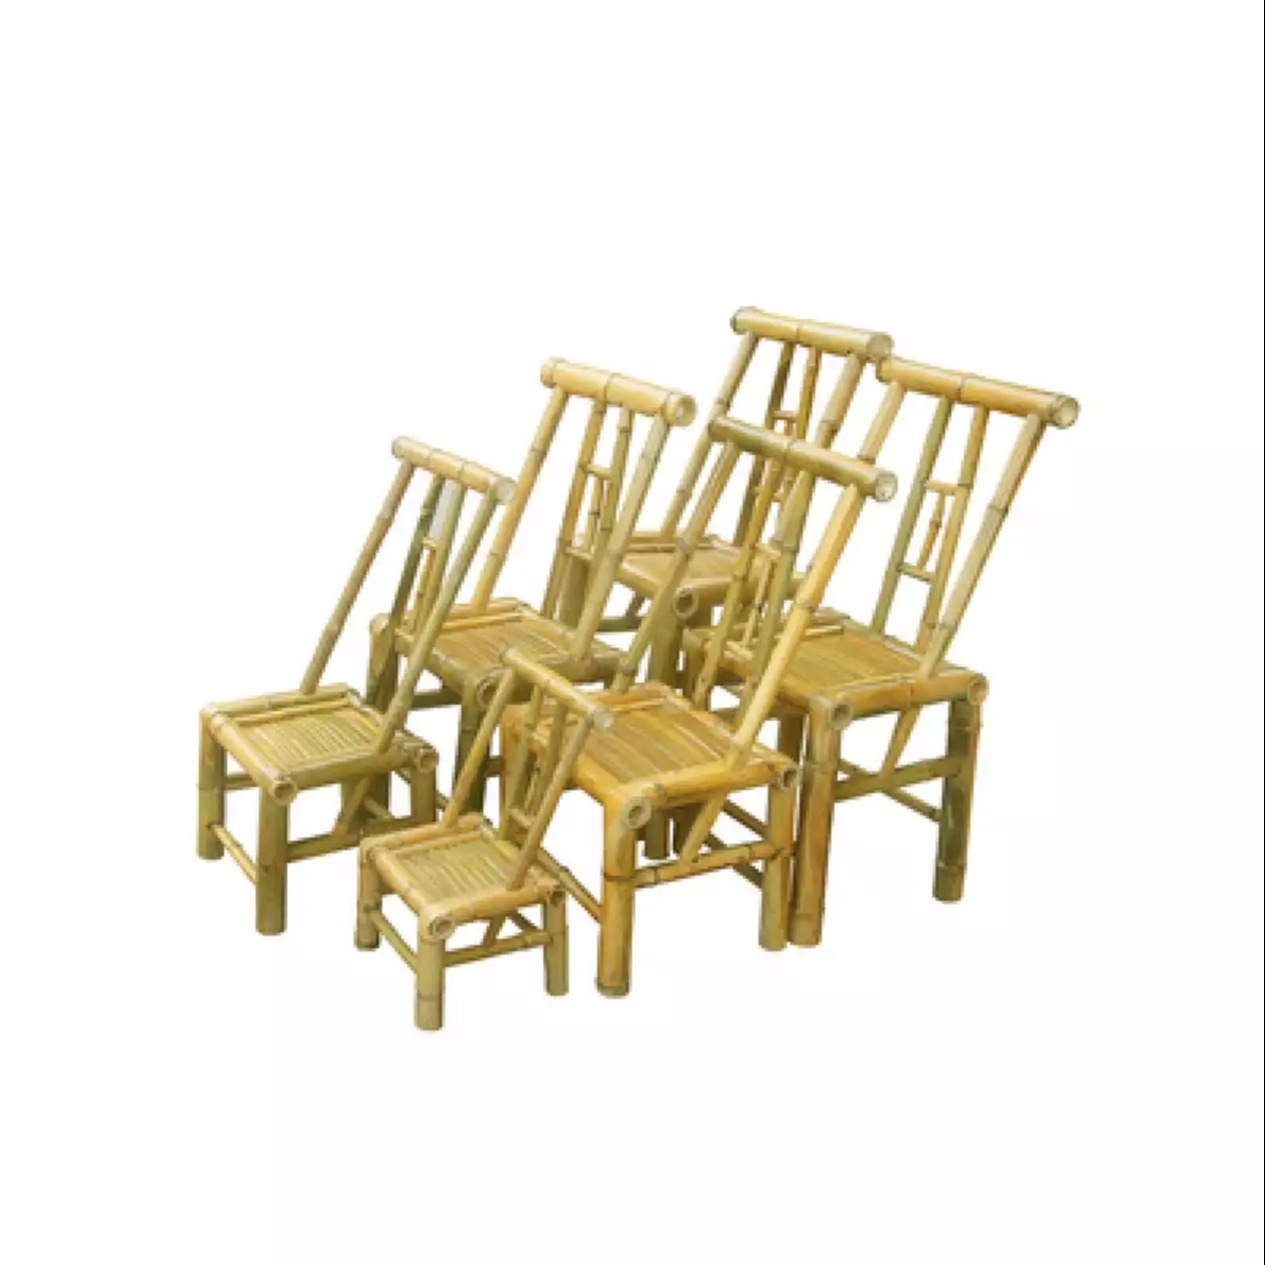 老茶馆竹椅子 质量好的竹椅子 小椅子批发 吴兴崔琦竹制品商行图片